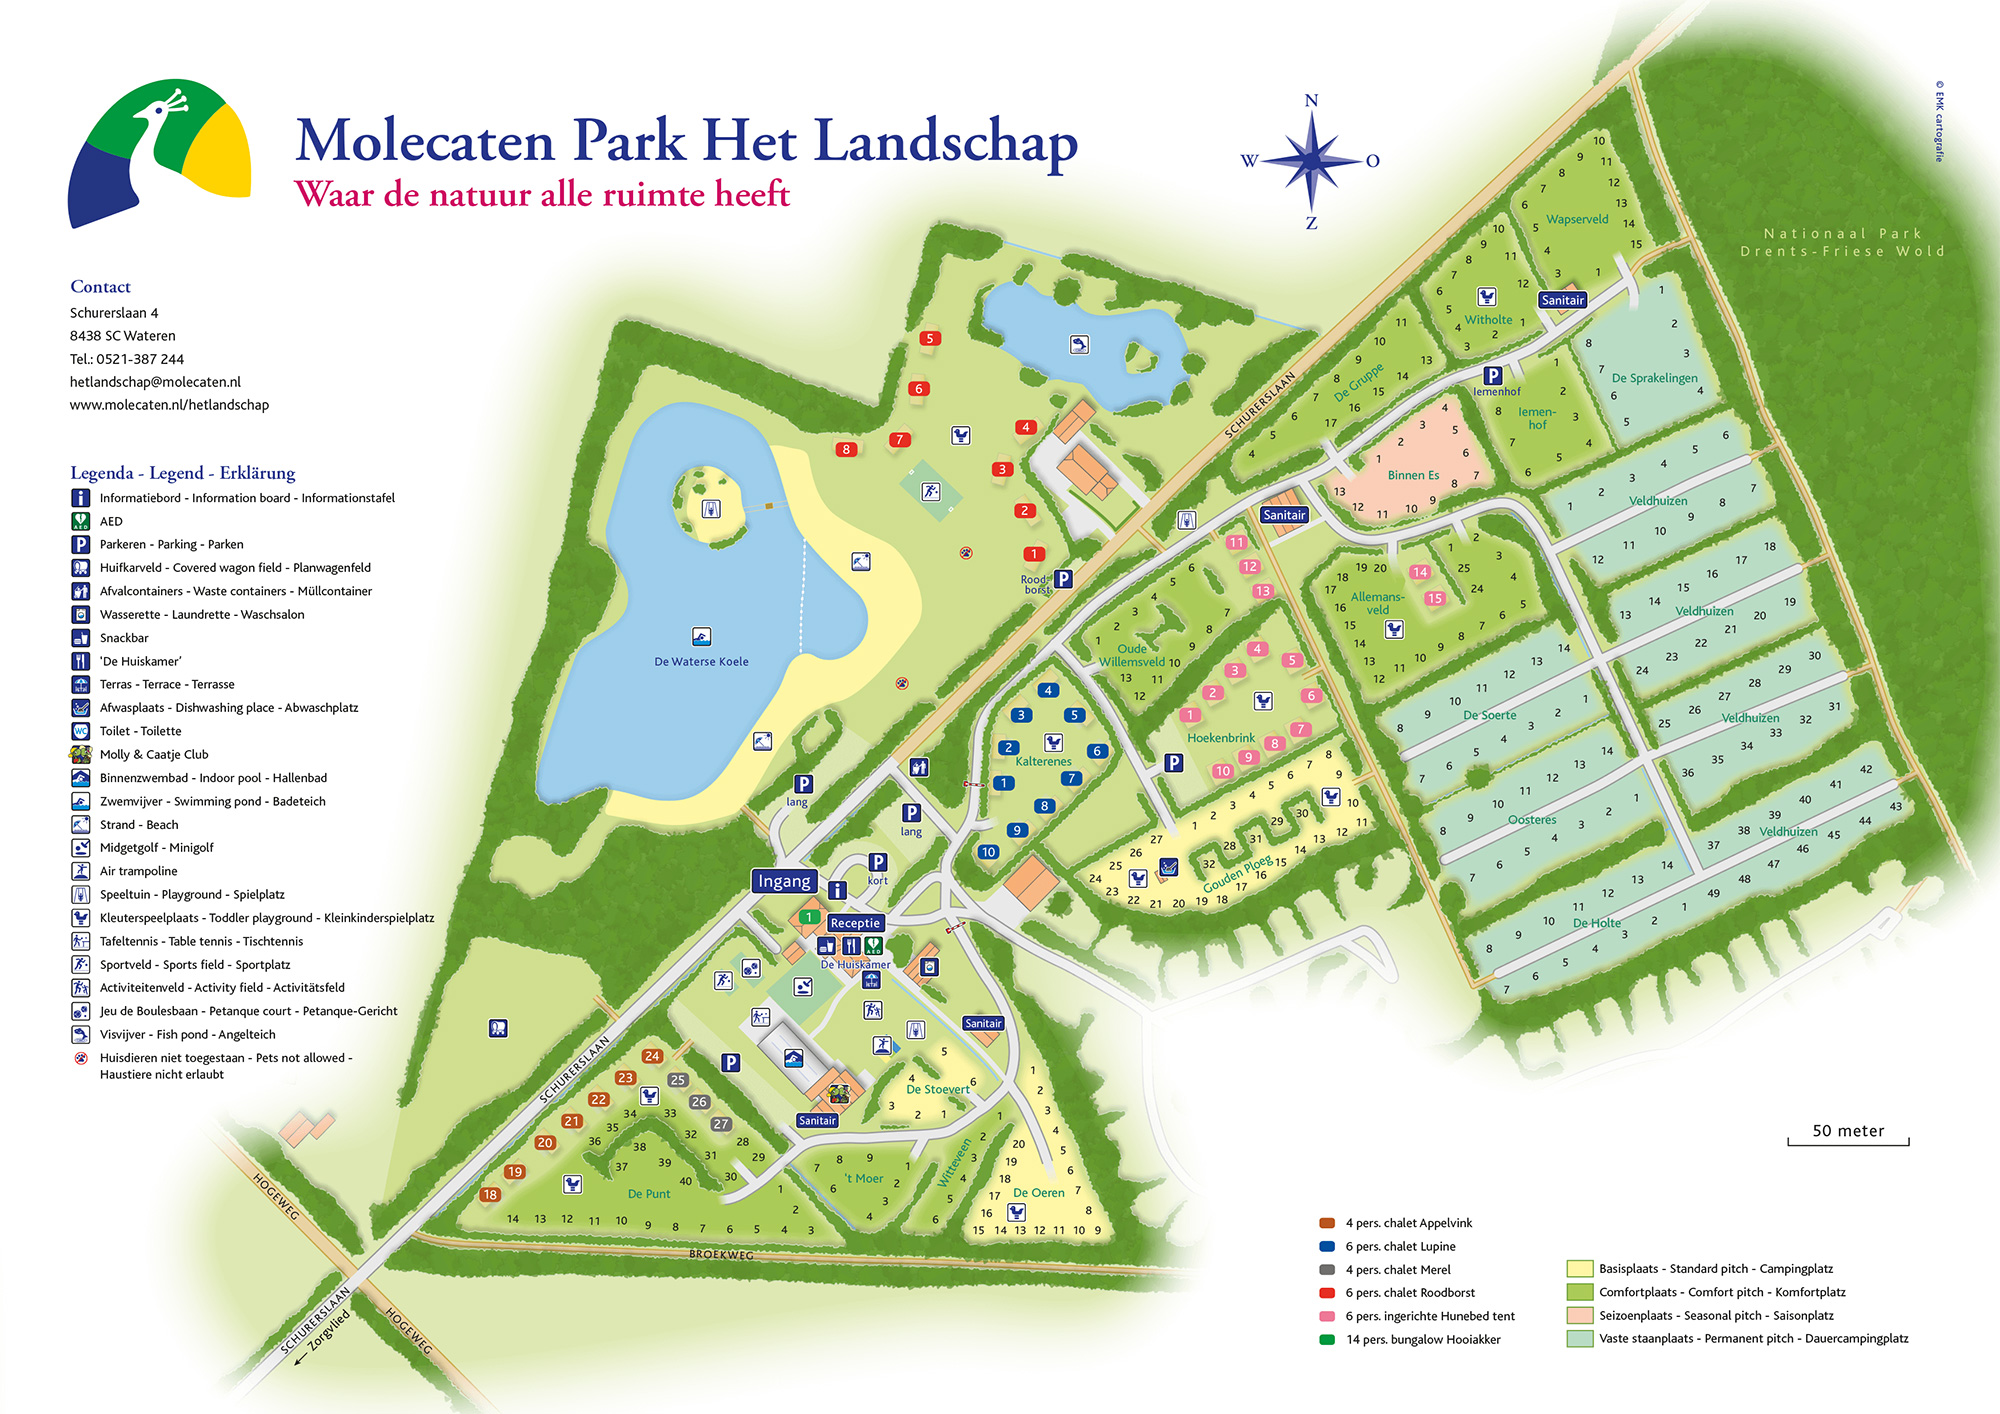 Lageplan Molecaten Park Het Landschap